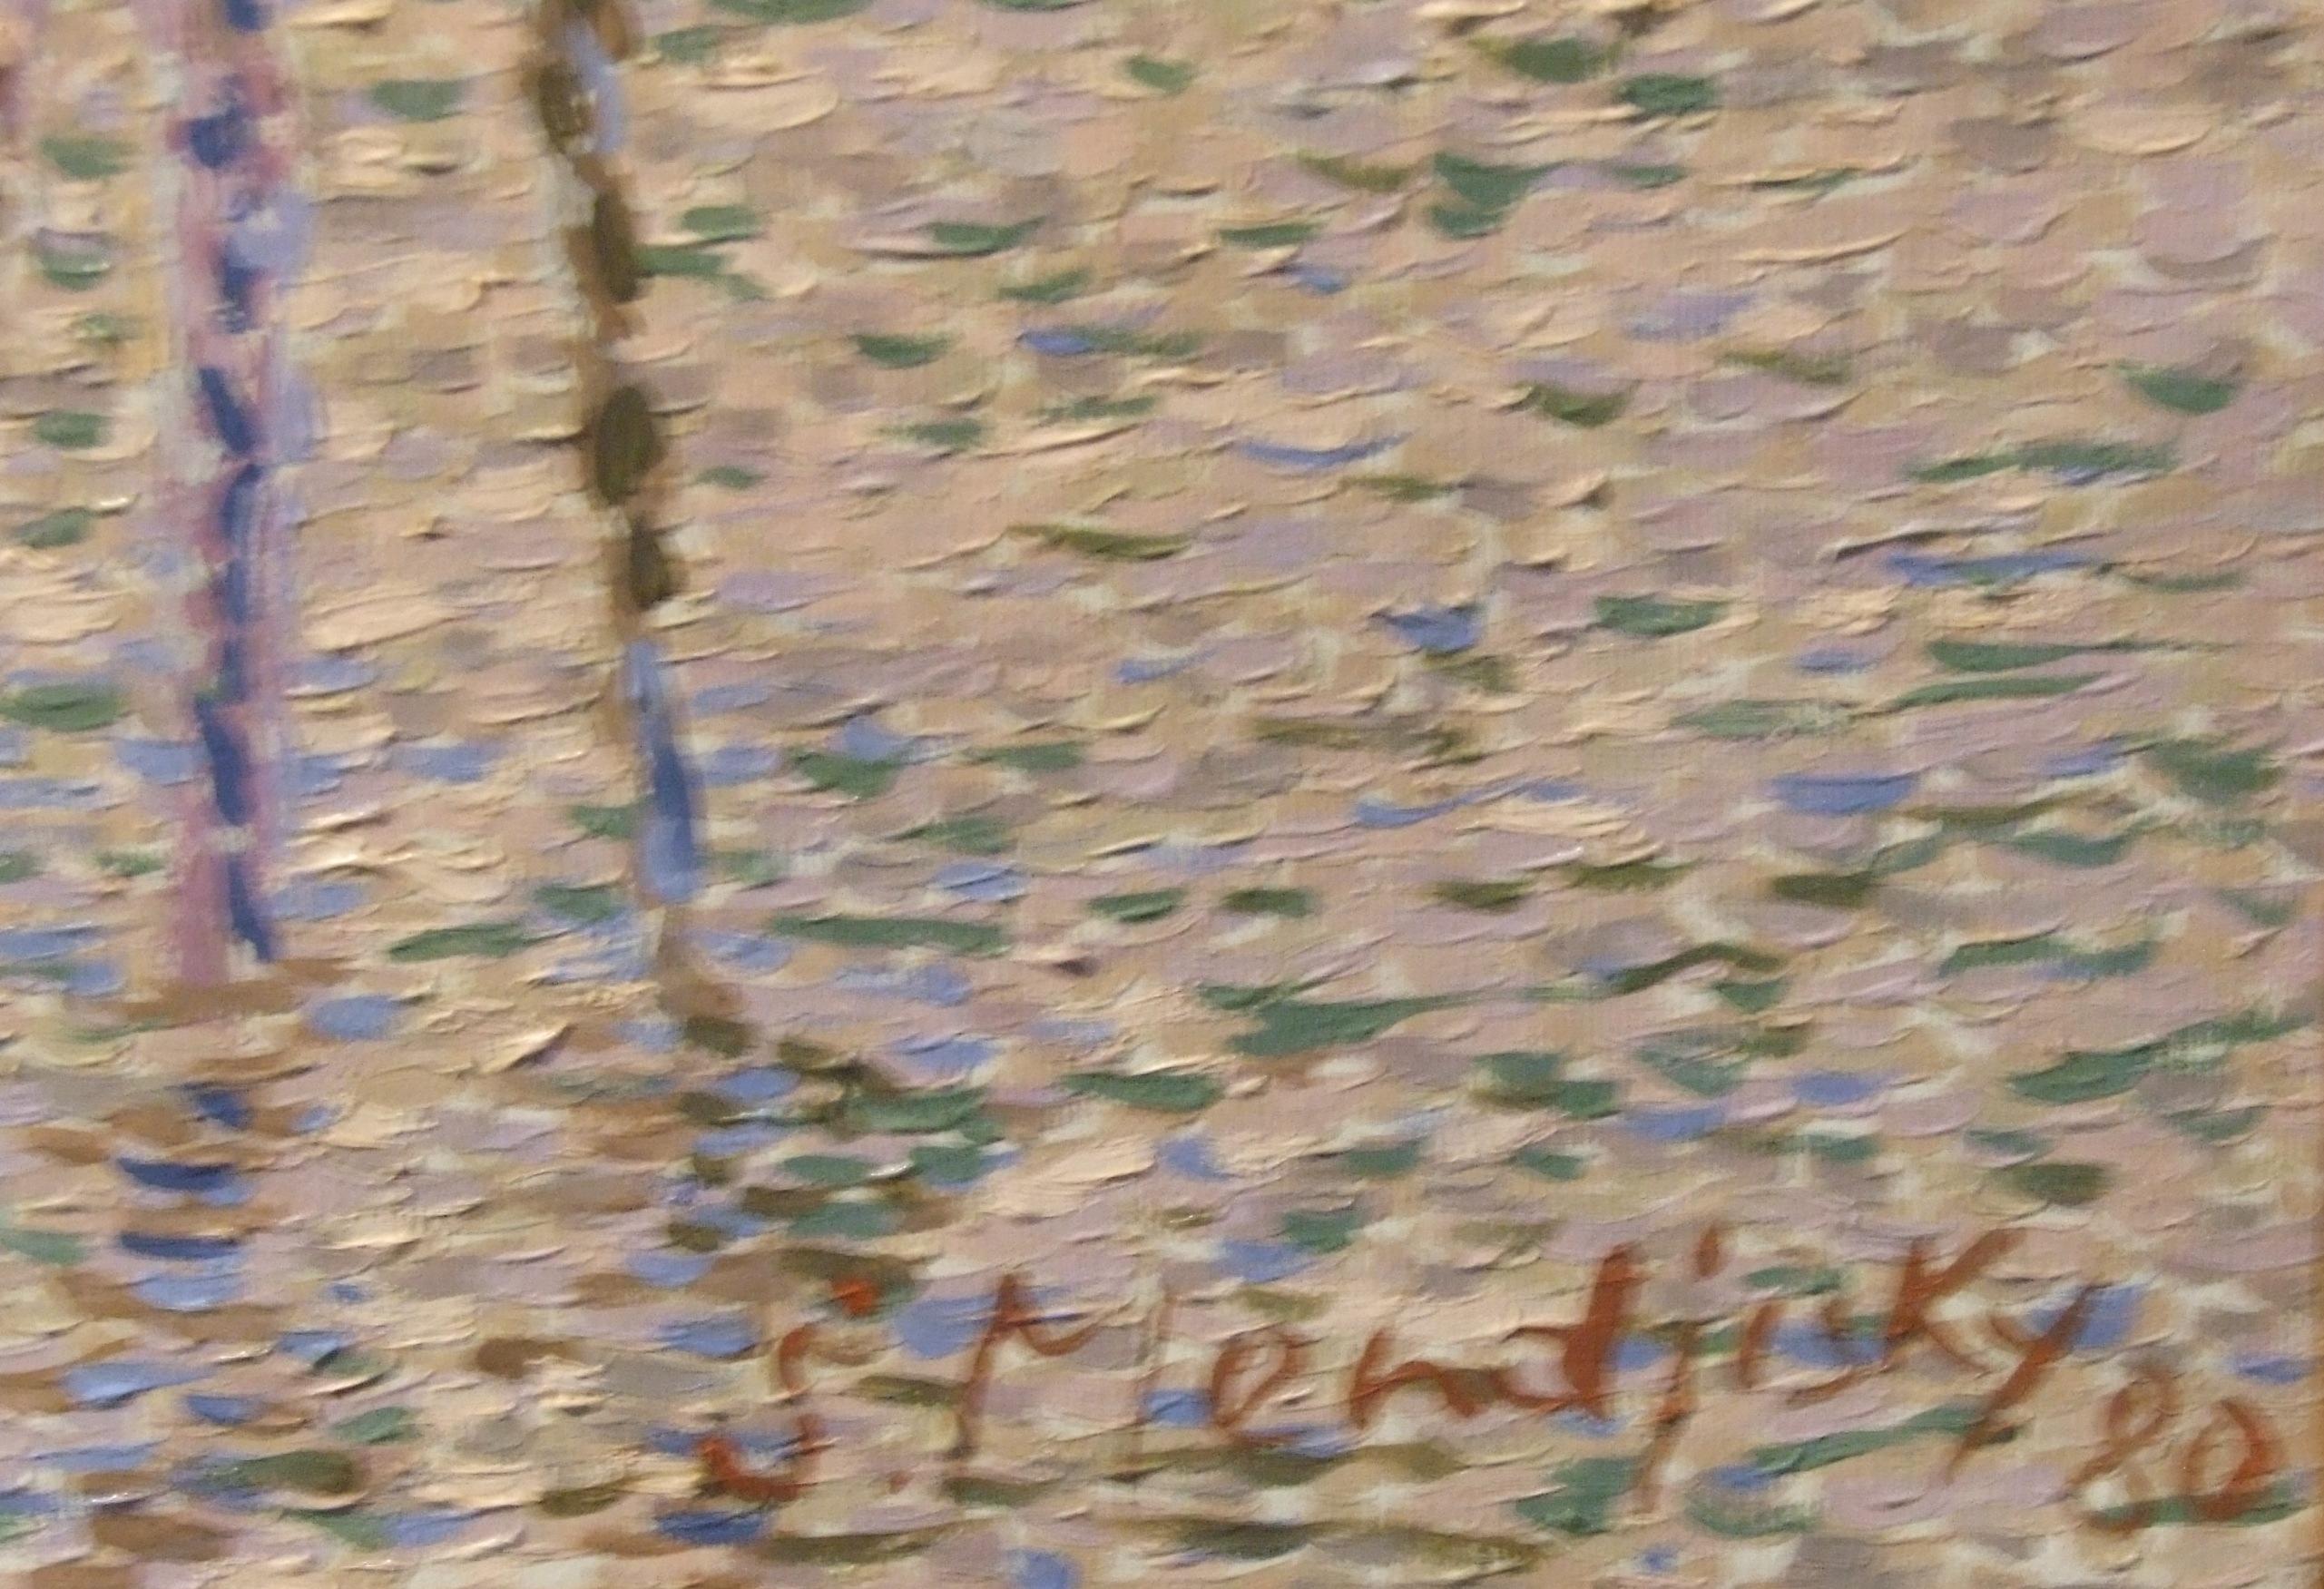 Venise - Huile sur toile, 50x100 cm, encadr (Pointillismus), Painting, von Serge Mendjisky